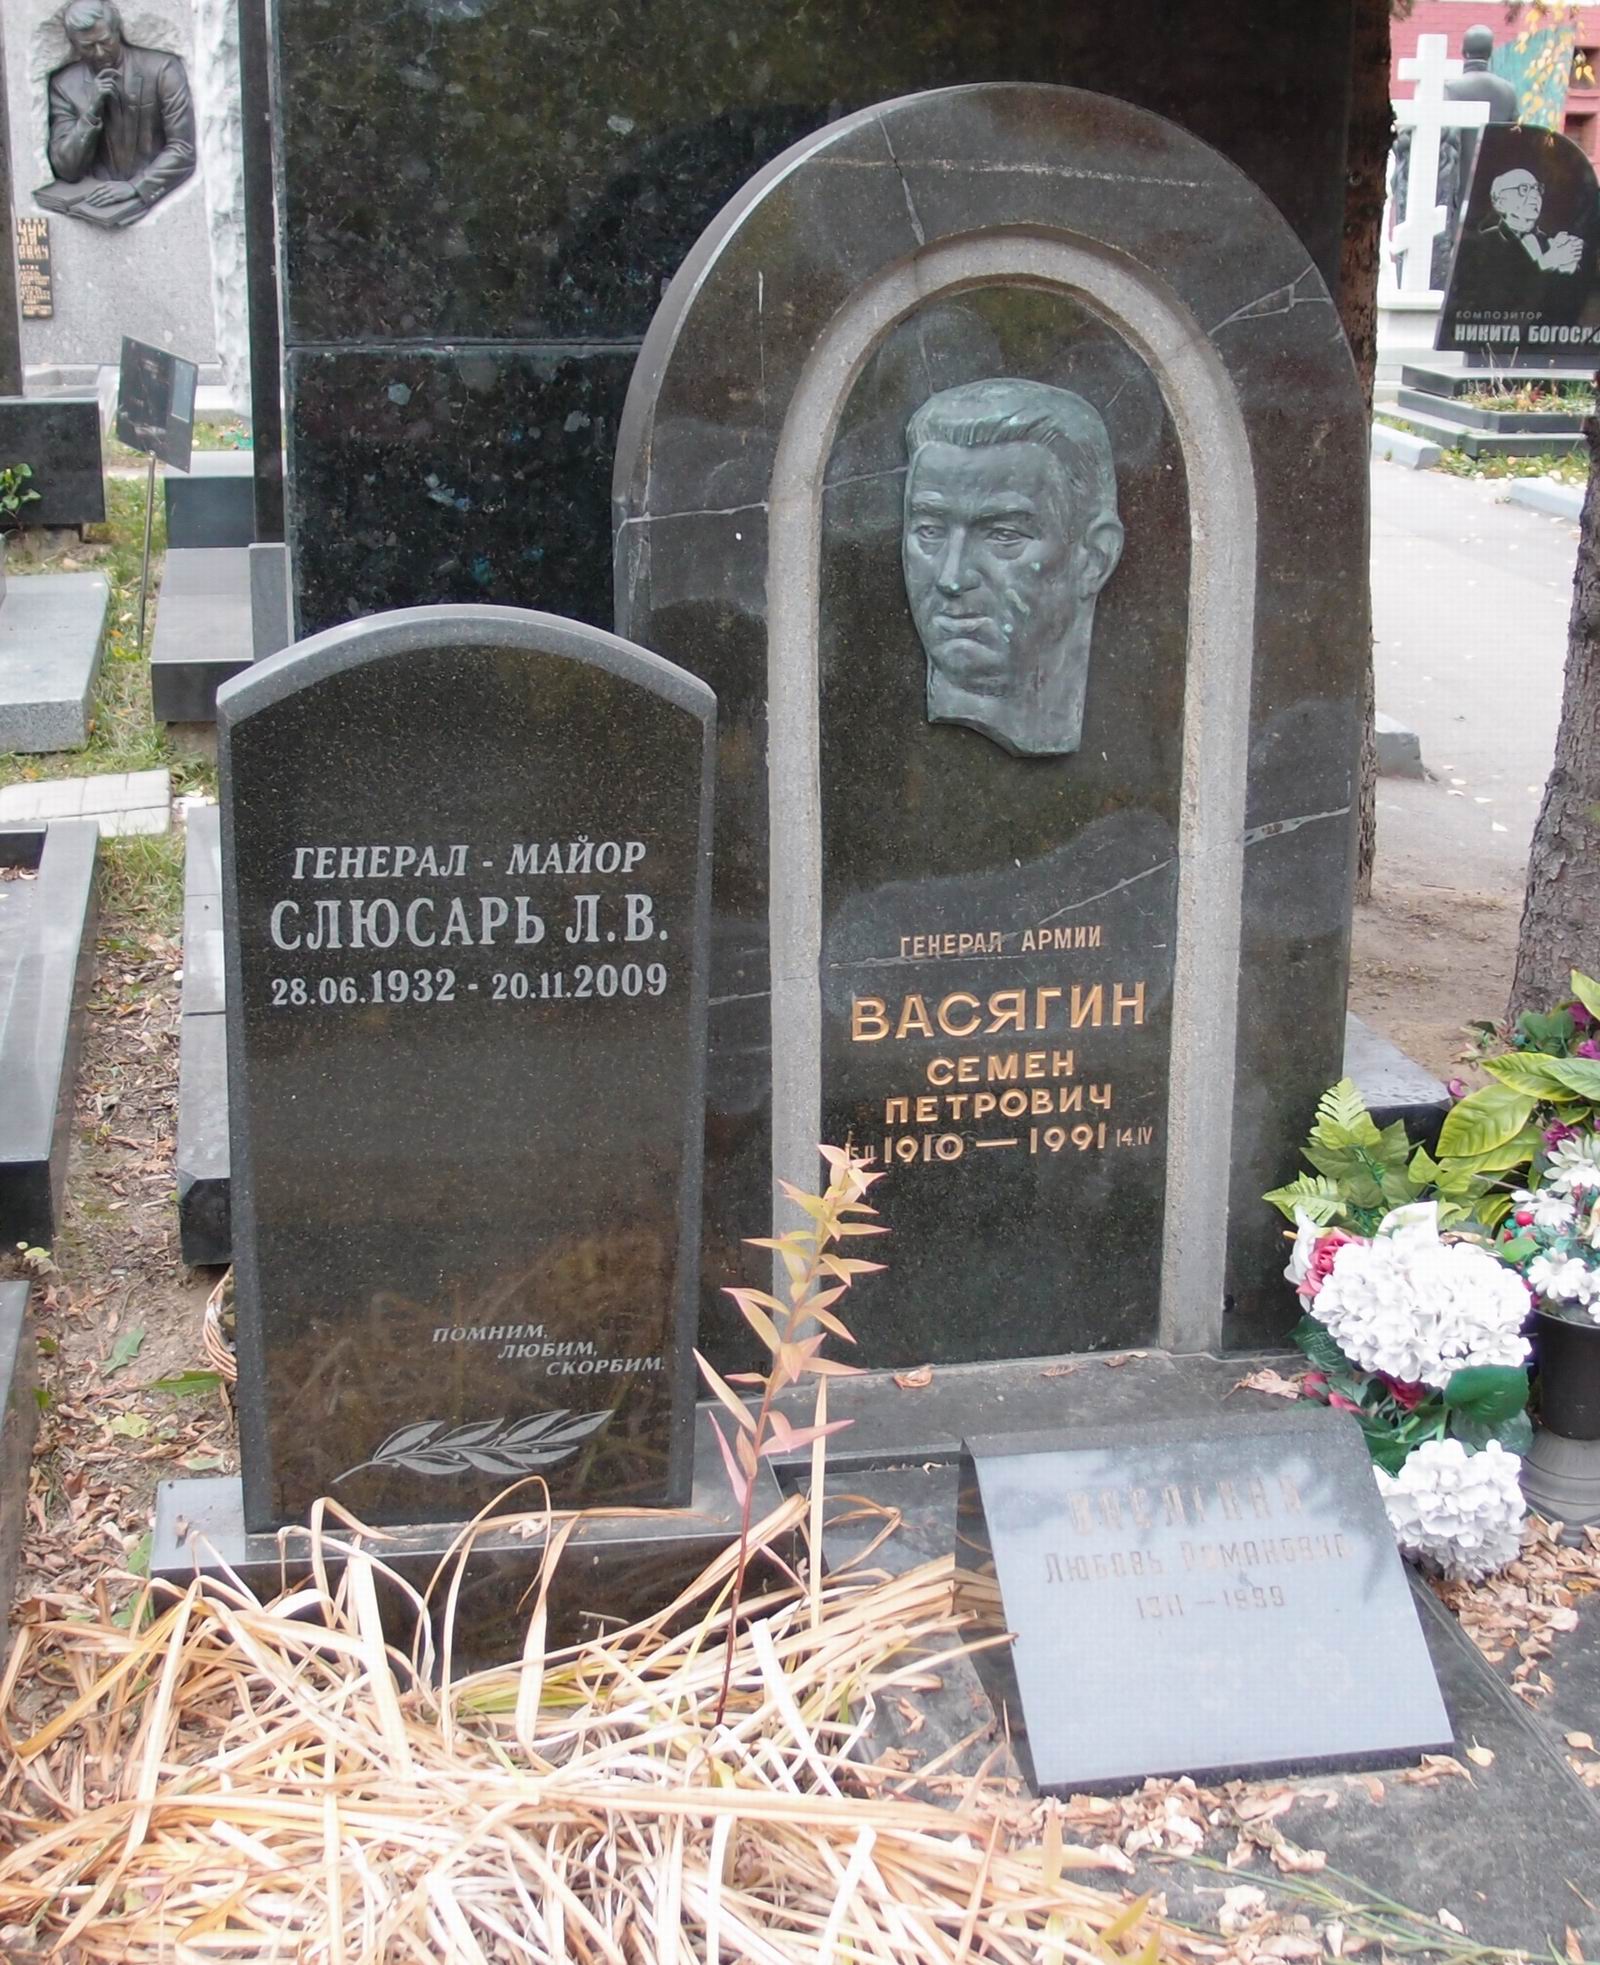 Памятник на могиле Васягина С.П. (1910-1991), ск. А.Бельдюшкин, арх. Б.Шехура, на Новодевичьем кладбище (11-3-1).